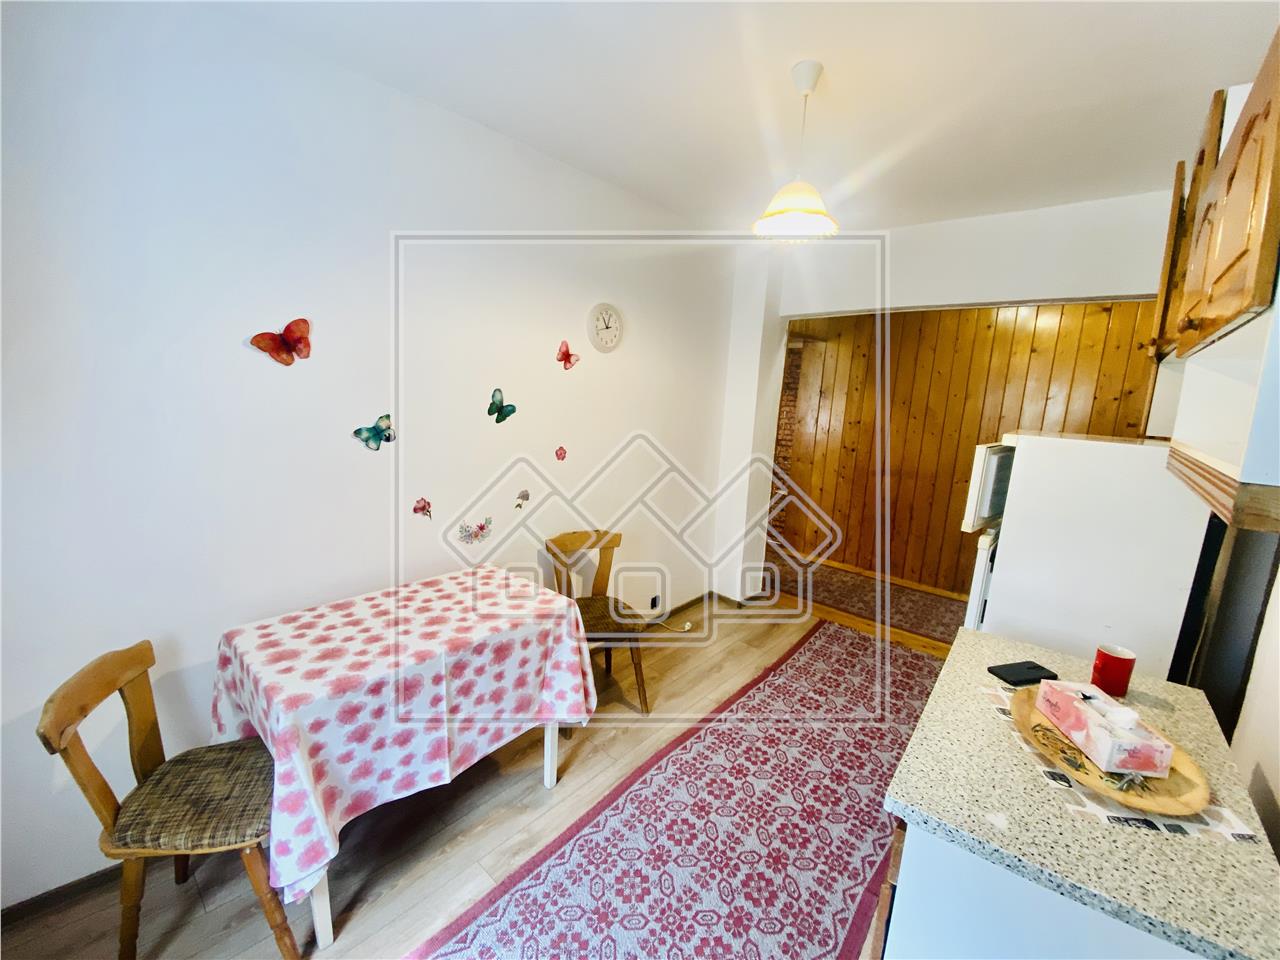 Apartament de vanzare in Sibiu - 2 camere si pivnita - Zona Strand